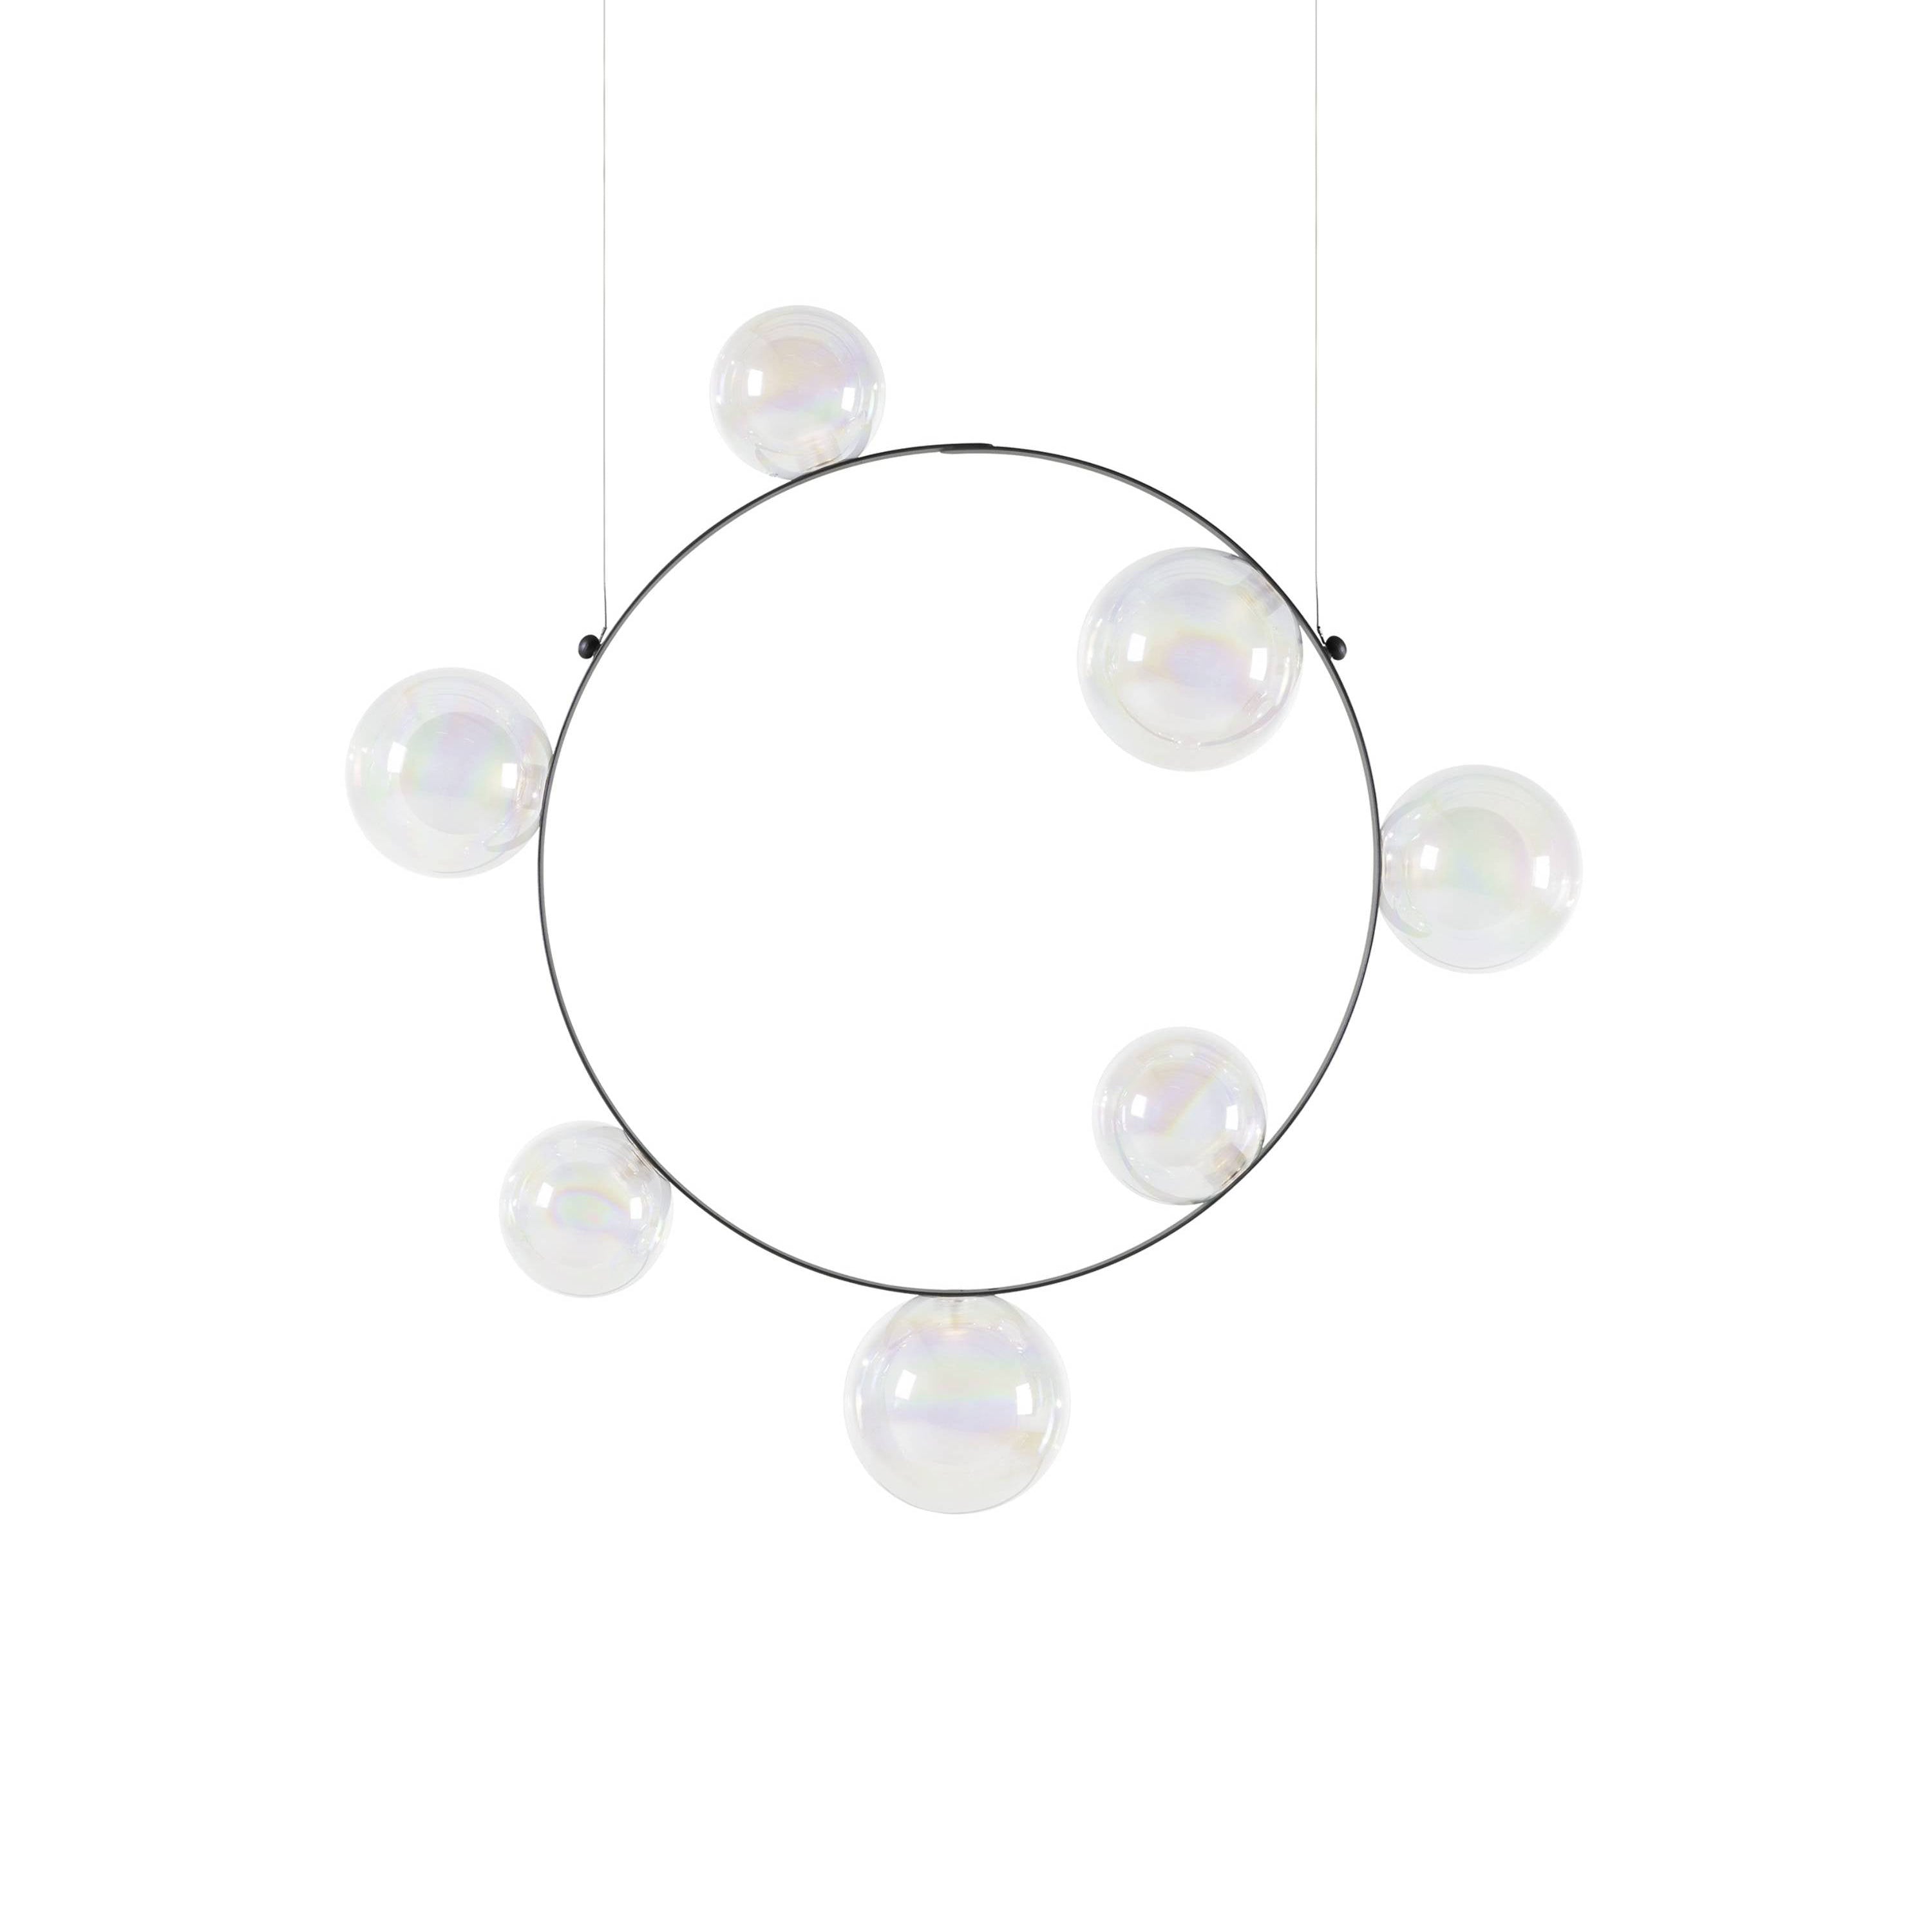 Hubble Bubble Suspension Lamp: Oil + 7